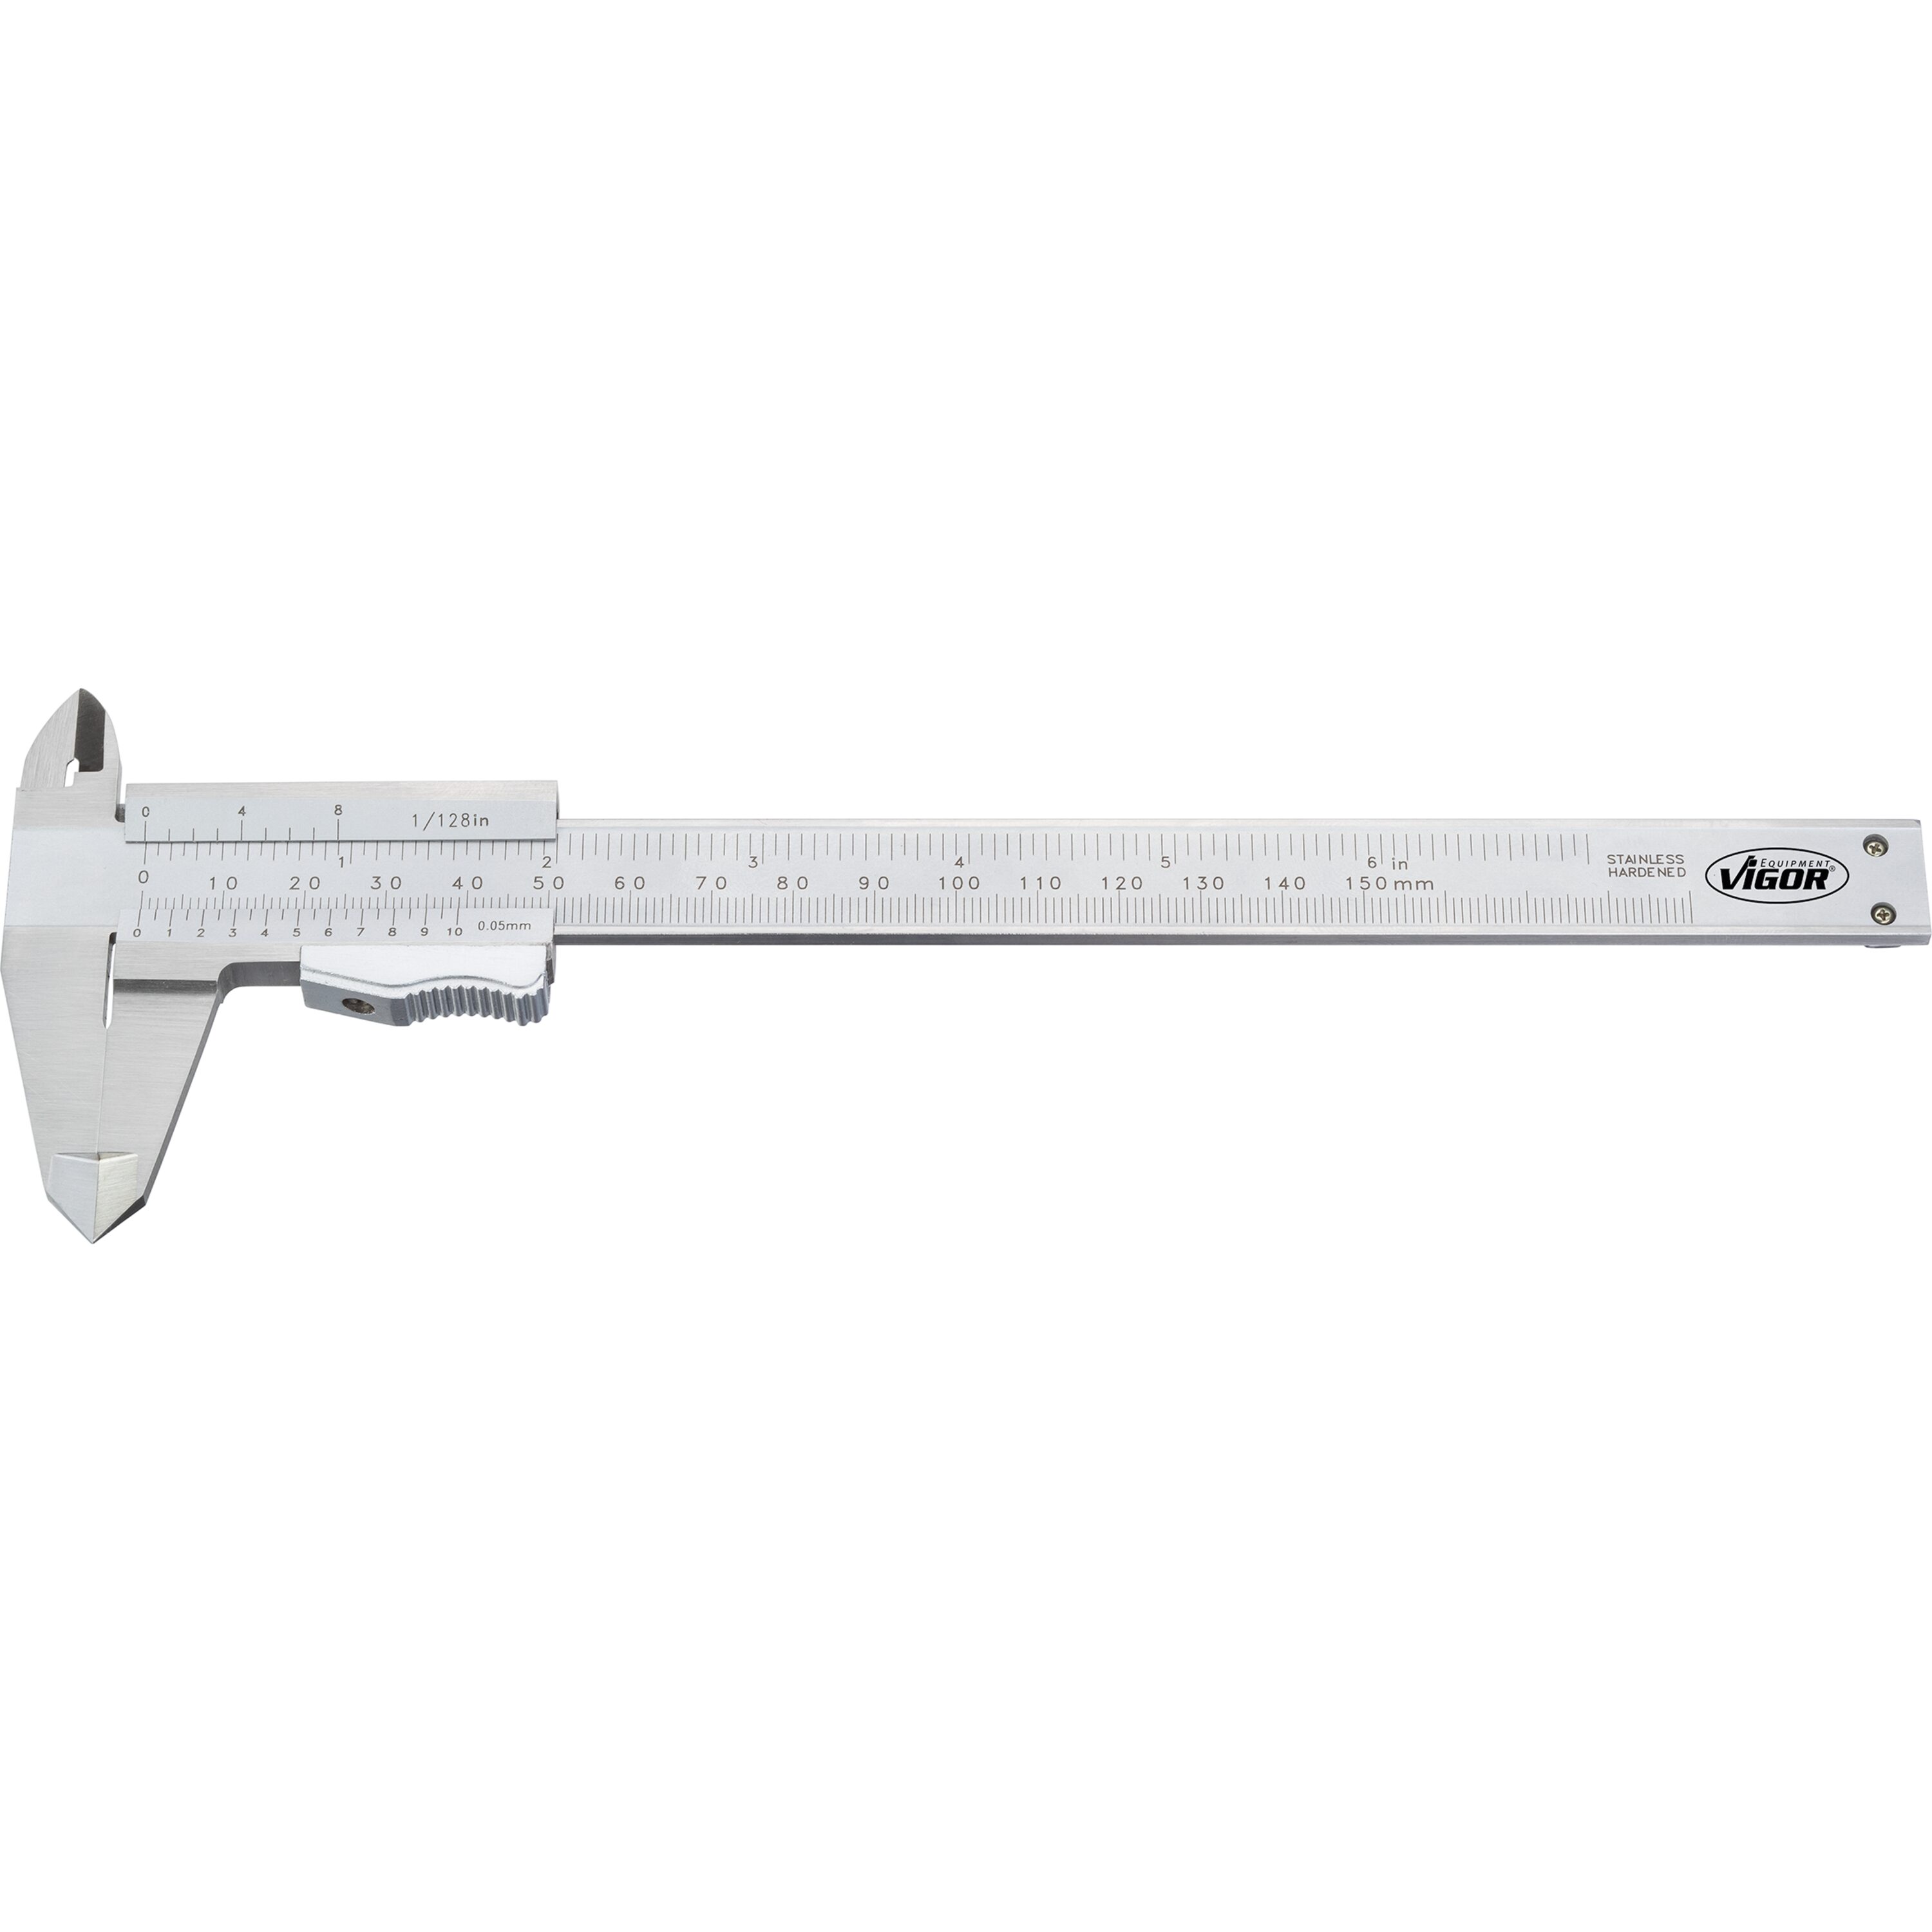 Meßschieber analog, 0 - 150mm, mit Tiefen-Meßstab, Länge 235mm, im  Kunststoffkasten, VIGOR SK102196